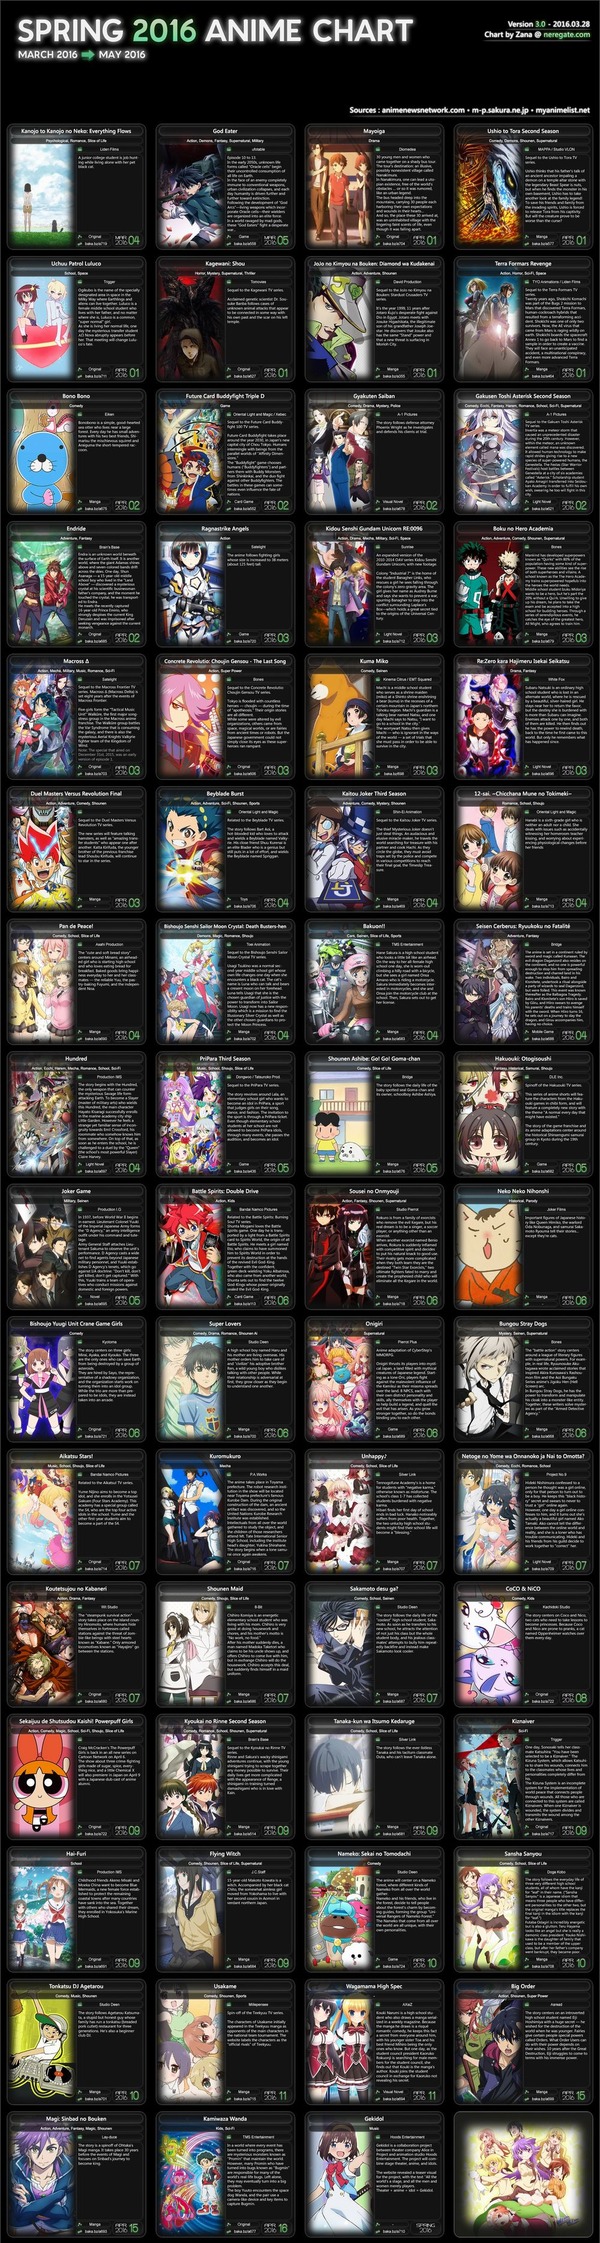 com-Spring-2016-Anime-Chart-v3